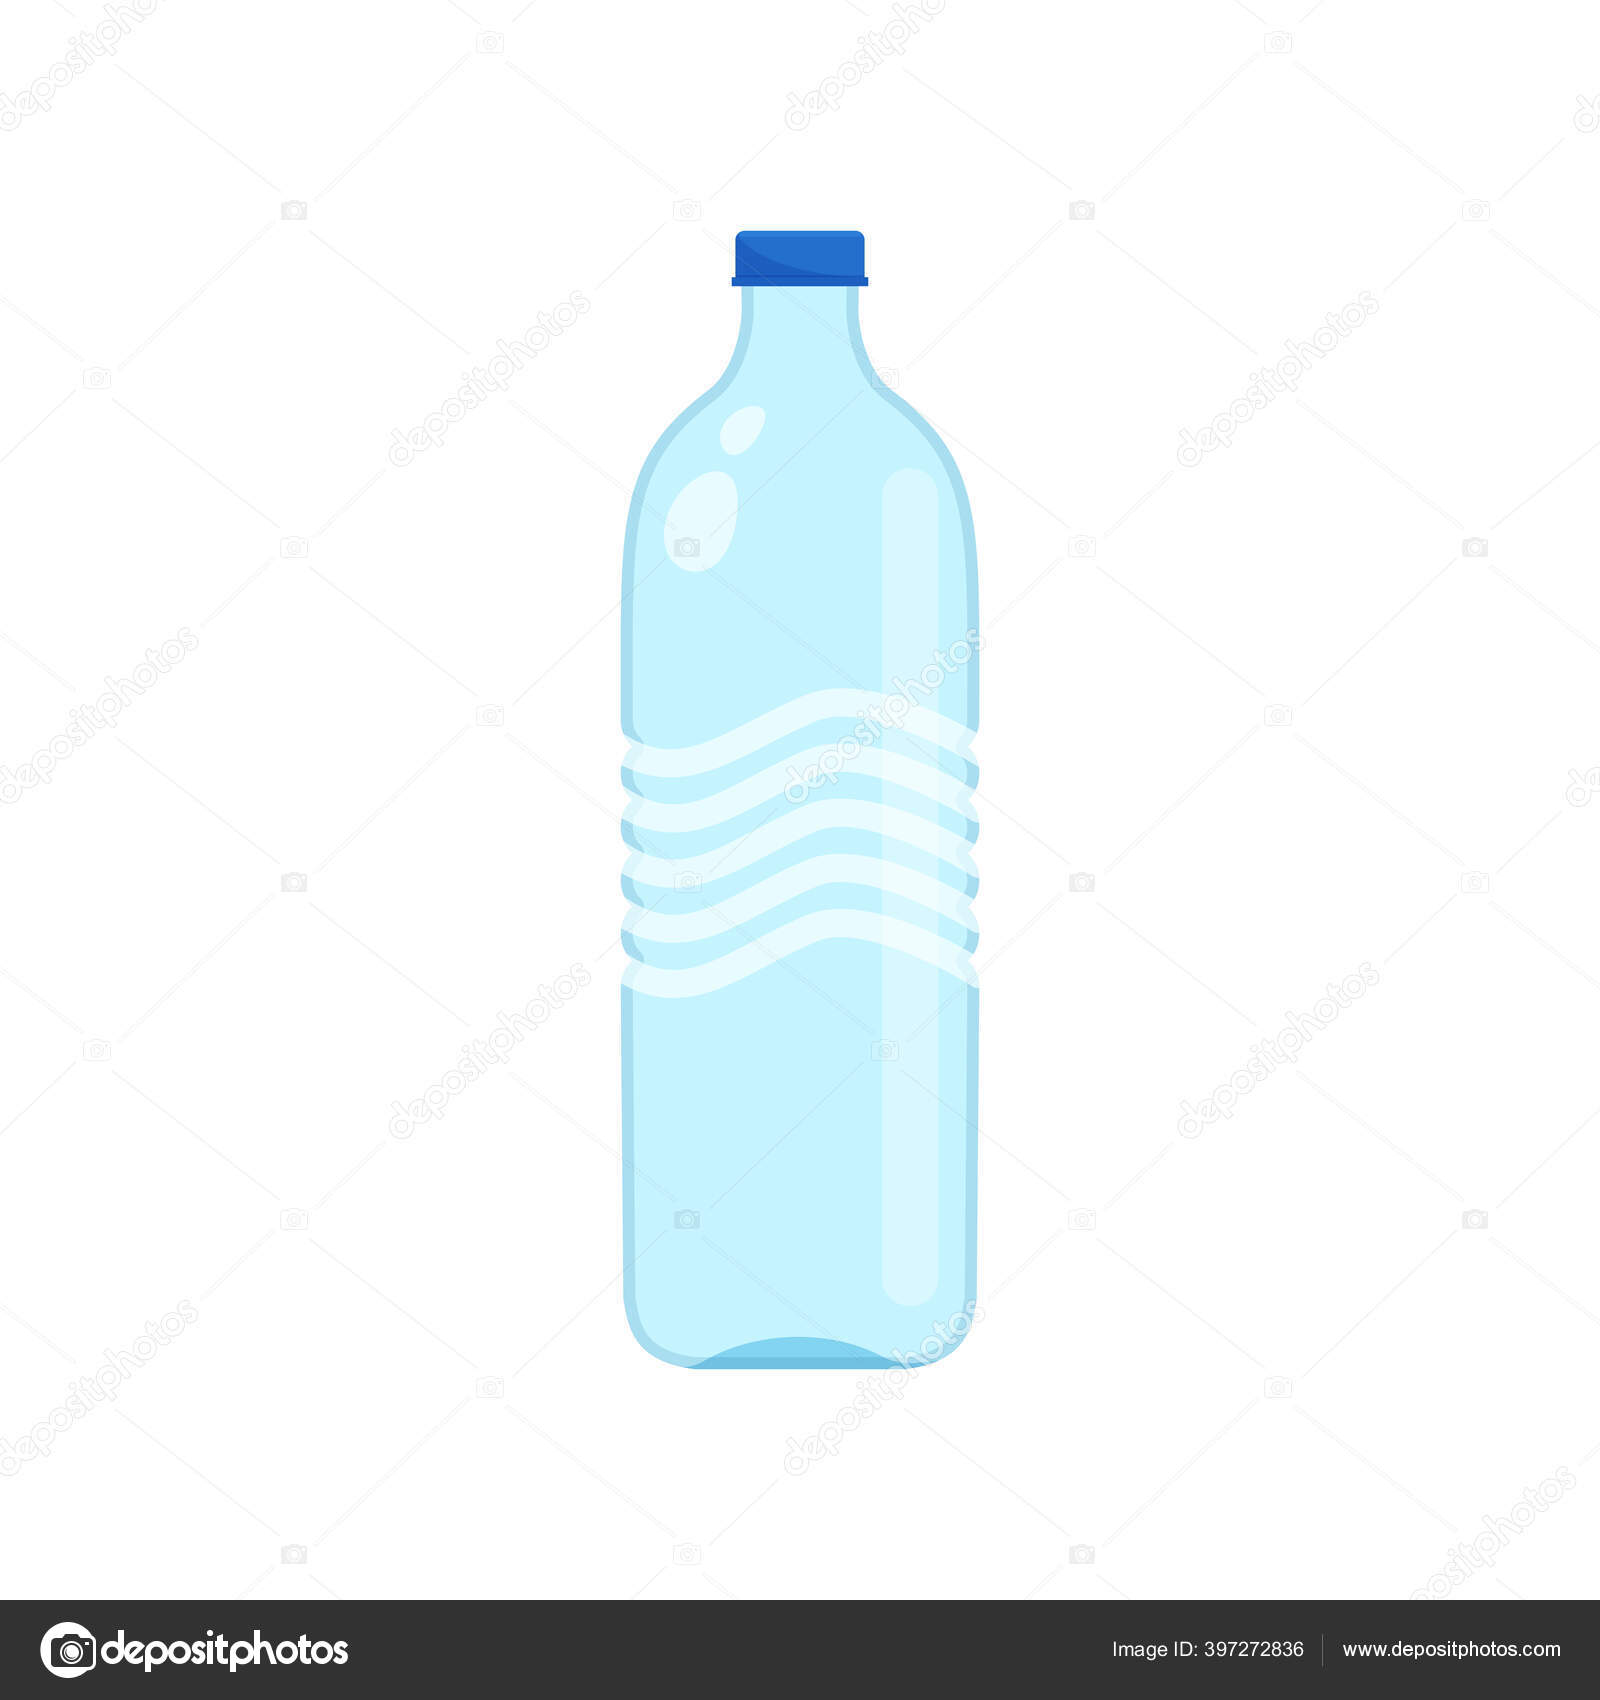 https://st4.depositphotos.com/16940446/39727/v/1600/depositphotos_397272836-stock-illustration-drinking-water-bottle-plastic-isolated.jpg